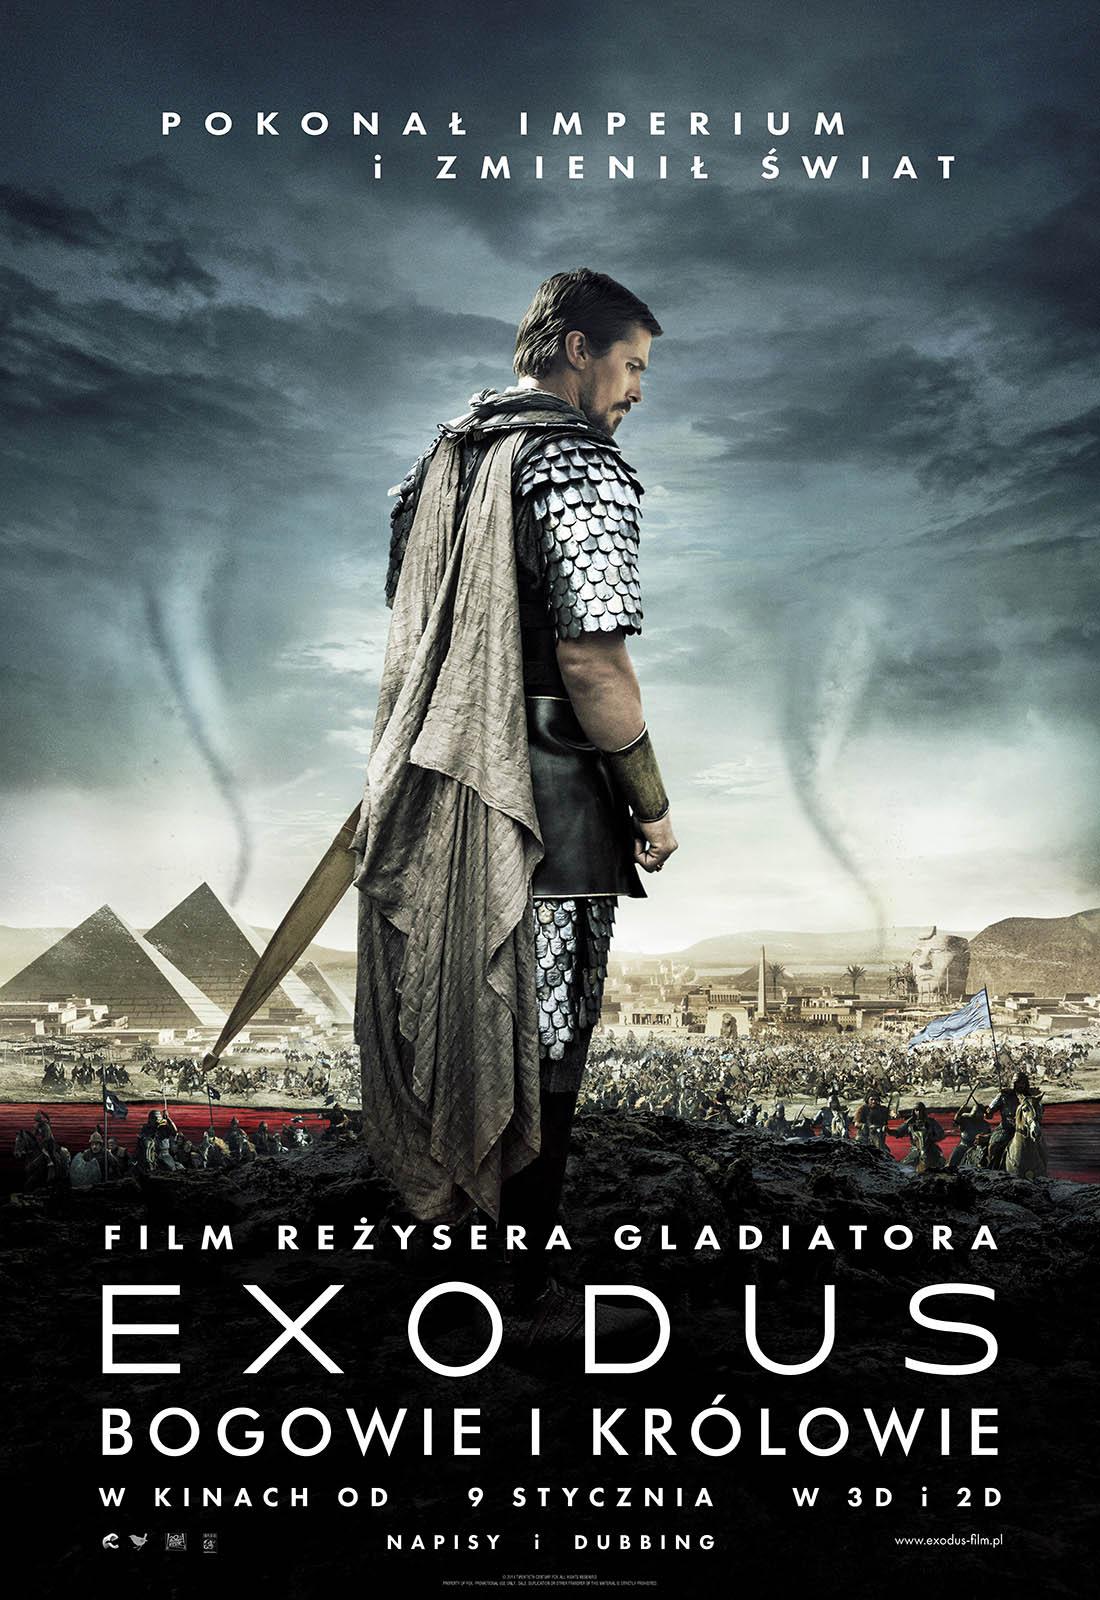 Постер фильма Исход: Цари и Боги | Exodus: Gods and Kings